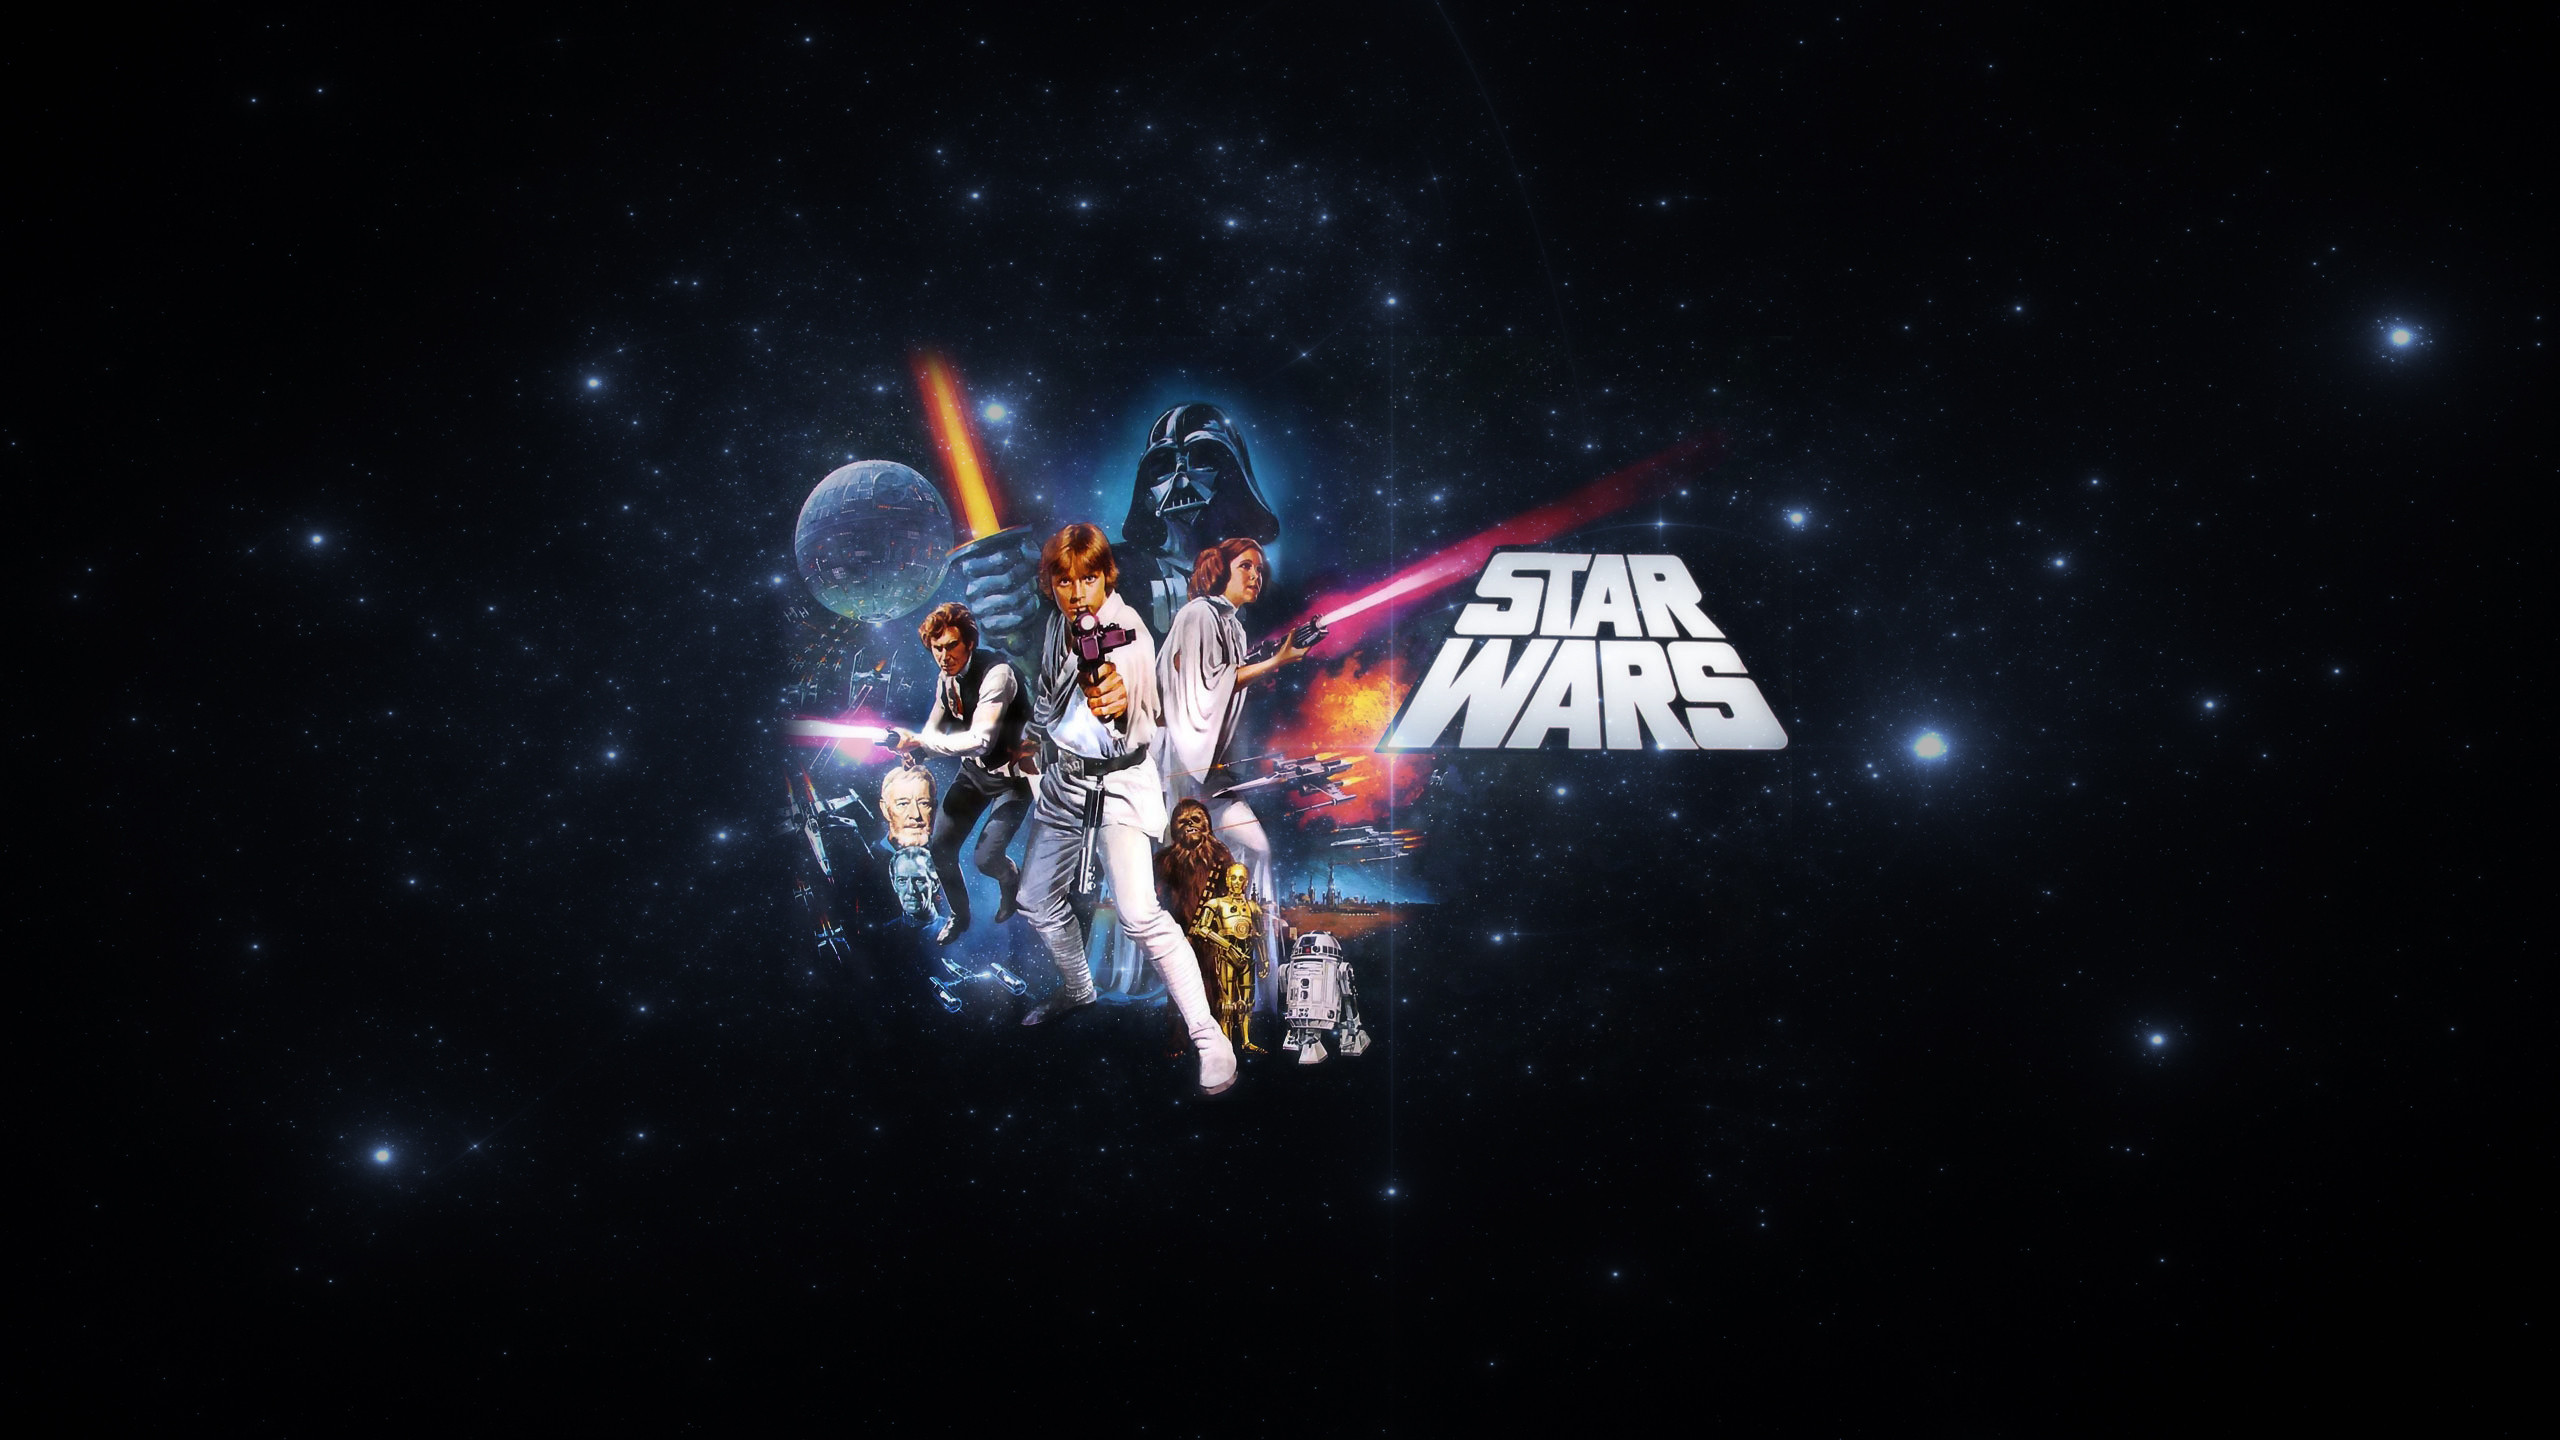 Darth Vader Moving Wallpaper ~ Star Wars, Luke Skywalker, Han Solo